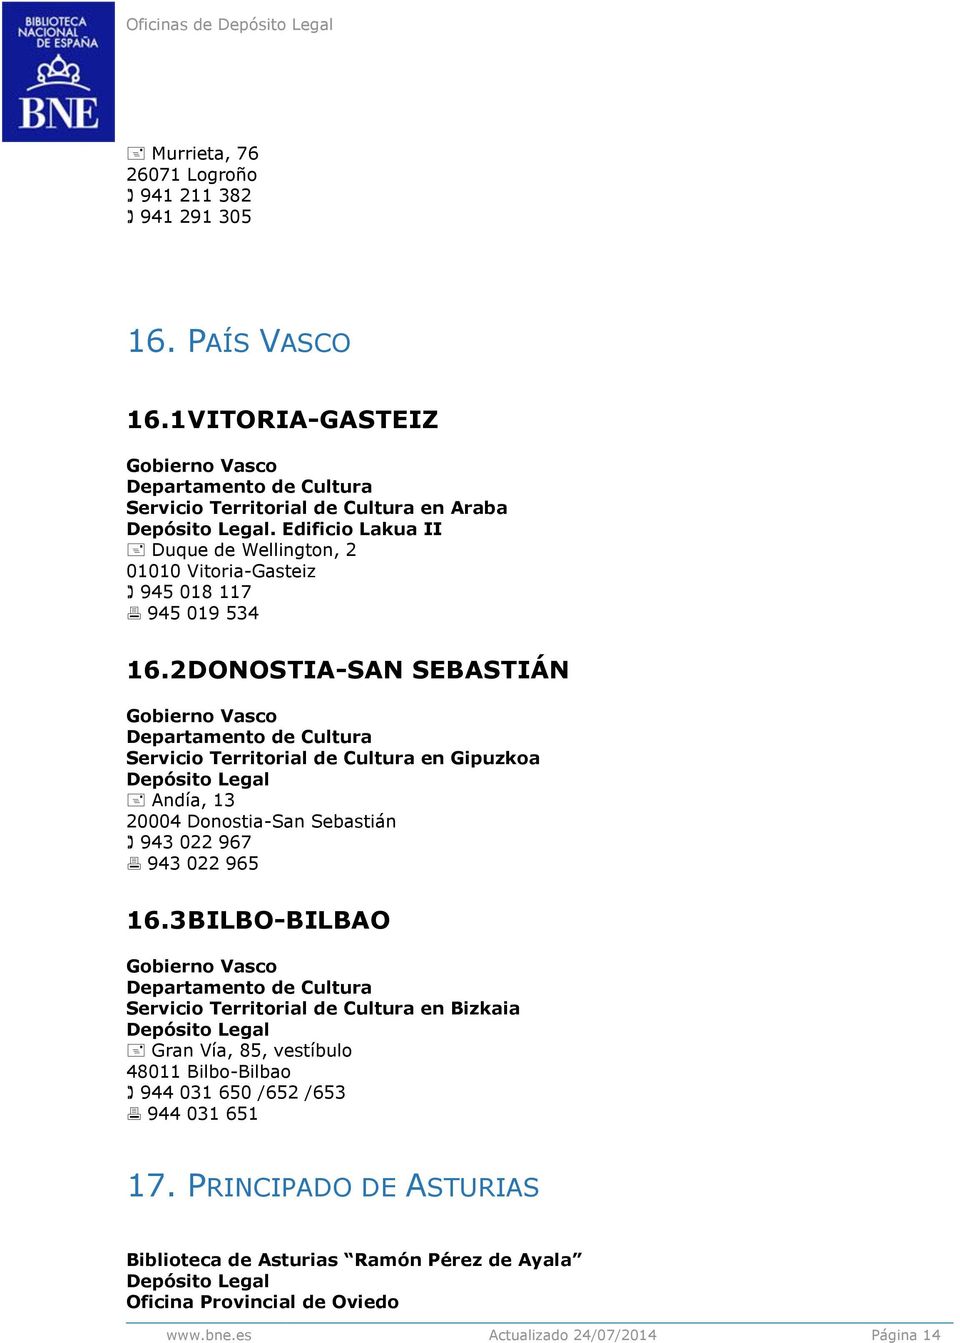 2 DONOSTIA-SAN SEBASTIÁN Gobierno Vasco Departamento de Cultura en Gipuzkoa Andía, 13 20004 Donostia-San Sebastián 943 022 967 943 022 965 16.